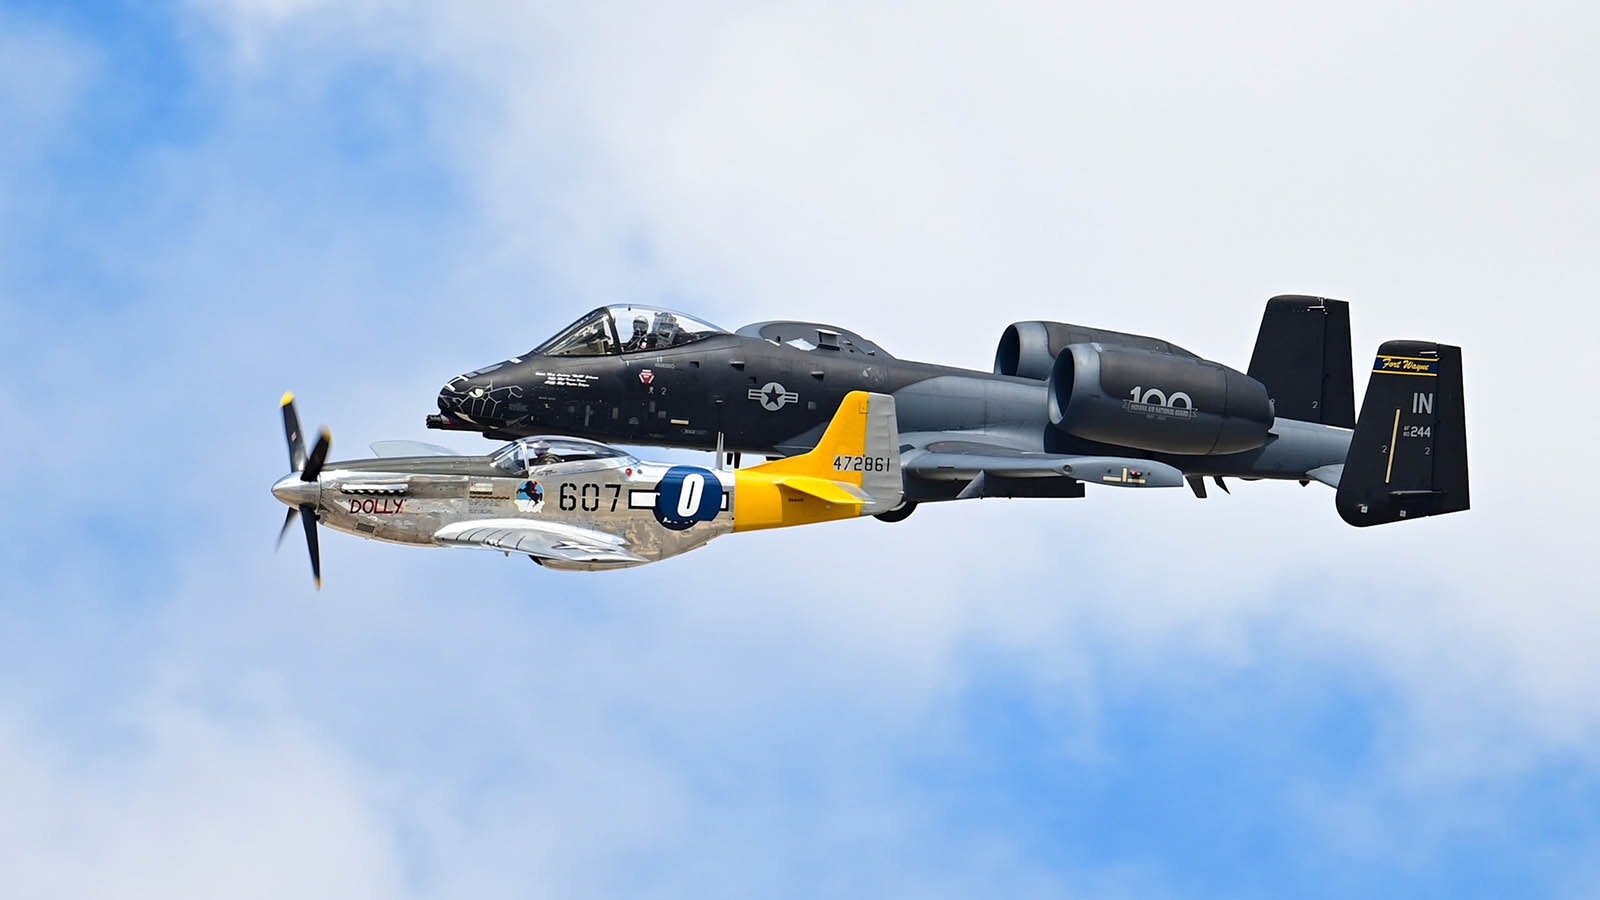 Profesionální výstavní tým létá na jednomotorovém P-51 Mustang doprovázeném A-10 Warthog.